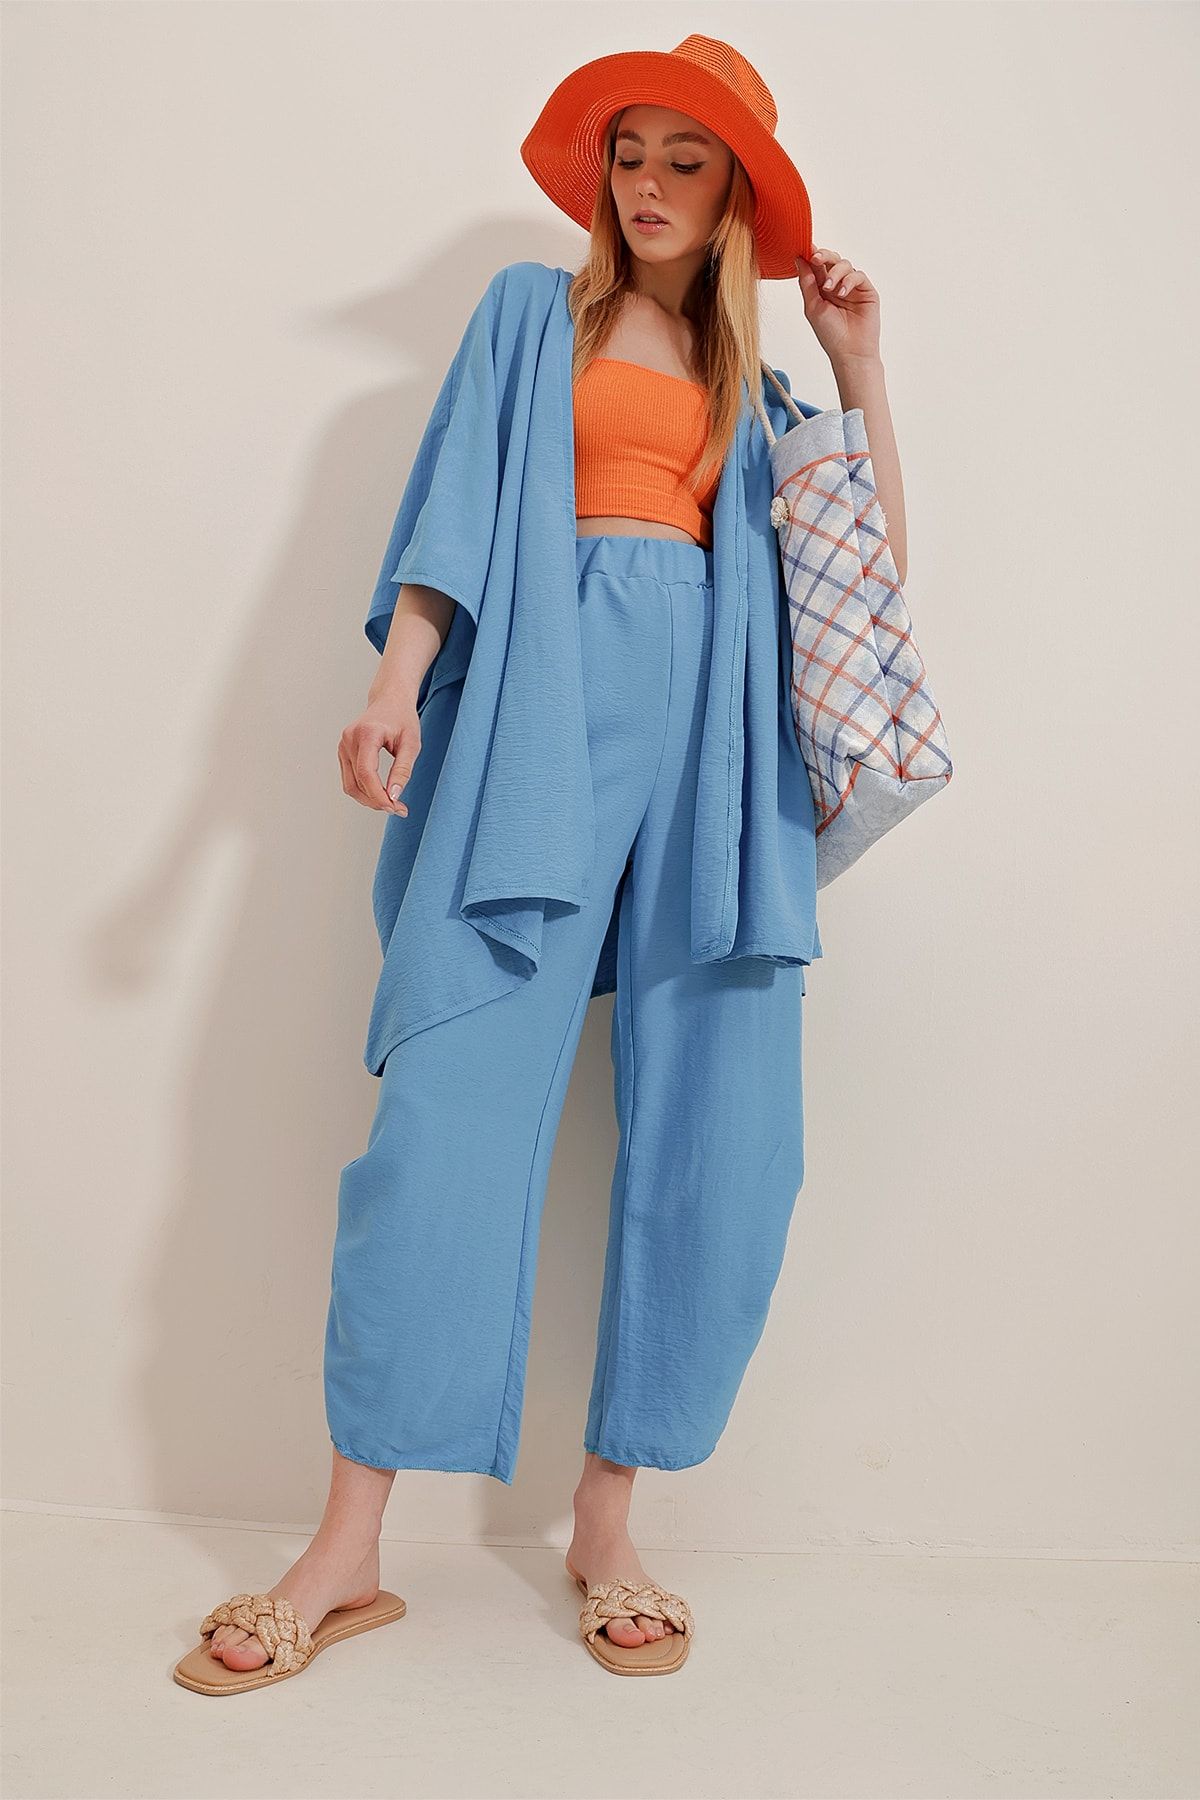 Trend Alaçatı Stili Kadın Havacı Mavi Paçası Yırtmaçlı Kendinden Dokulu Pantolon Ve Ceket İkili Takım ALC-752-001